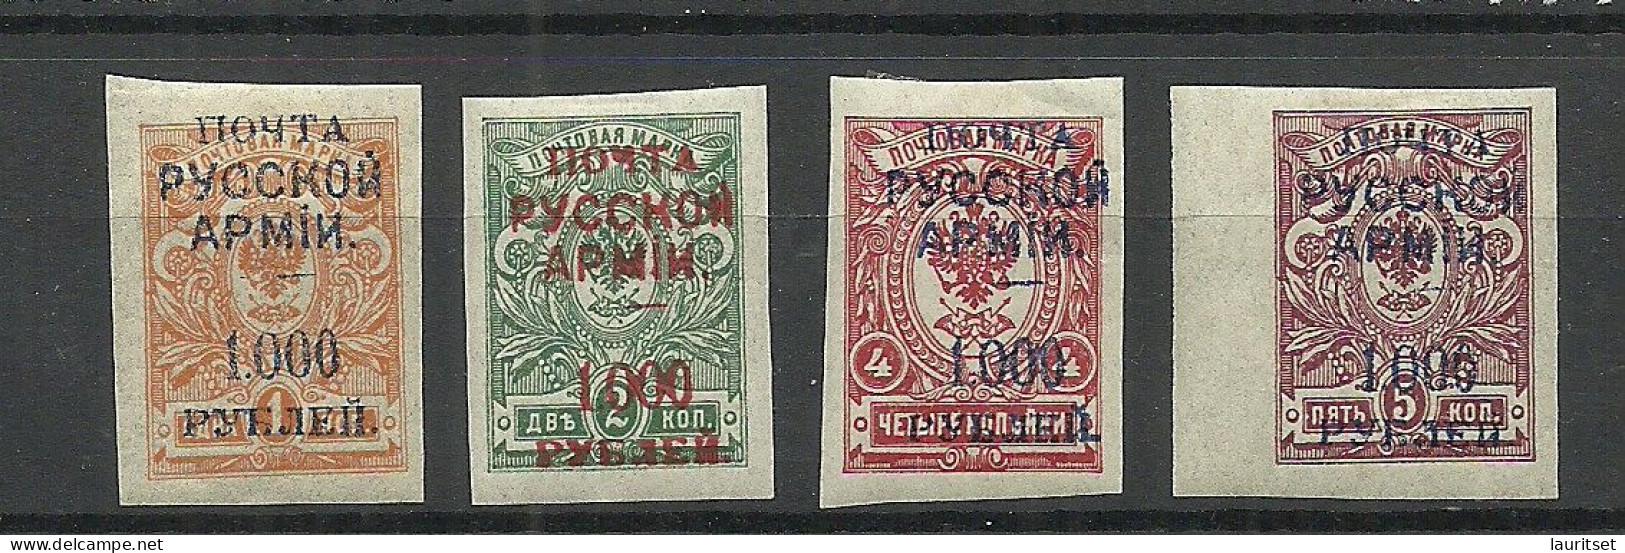 RUSSLAND RUSSIA 1920 Bürgerkrieg Wrangel Armee Lagerpost In Gallipoli, 4 Imperforated Stamps * - Armada Wrangel